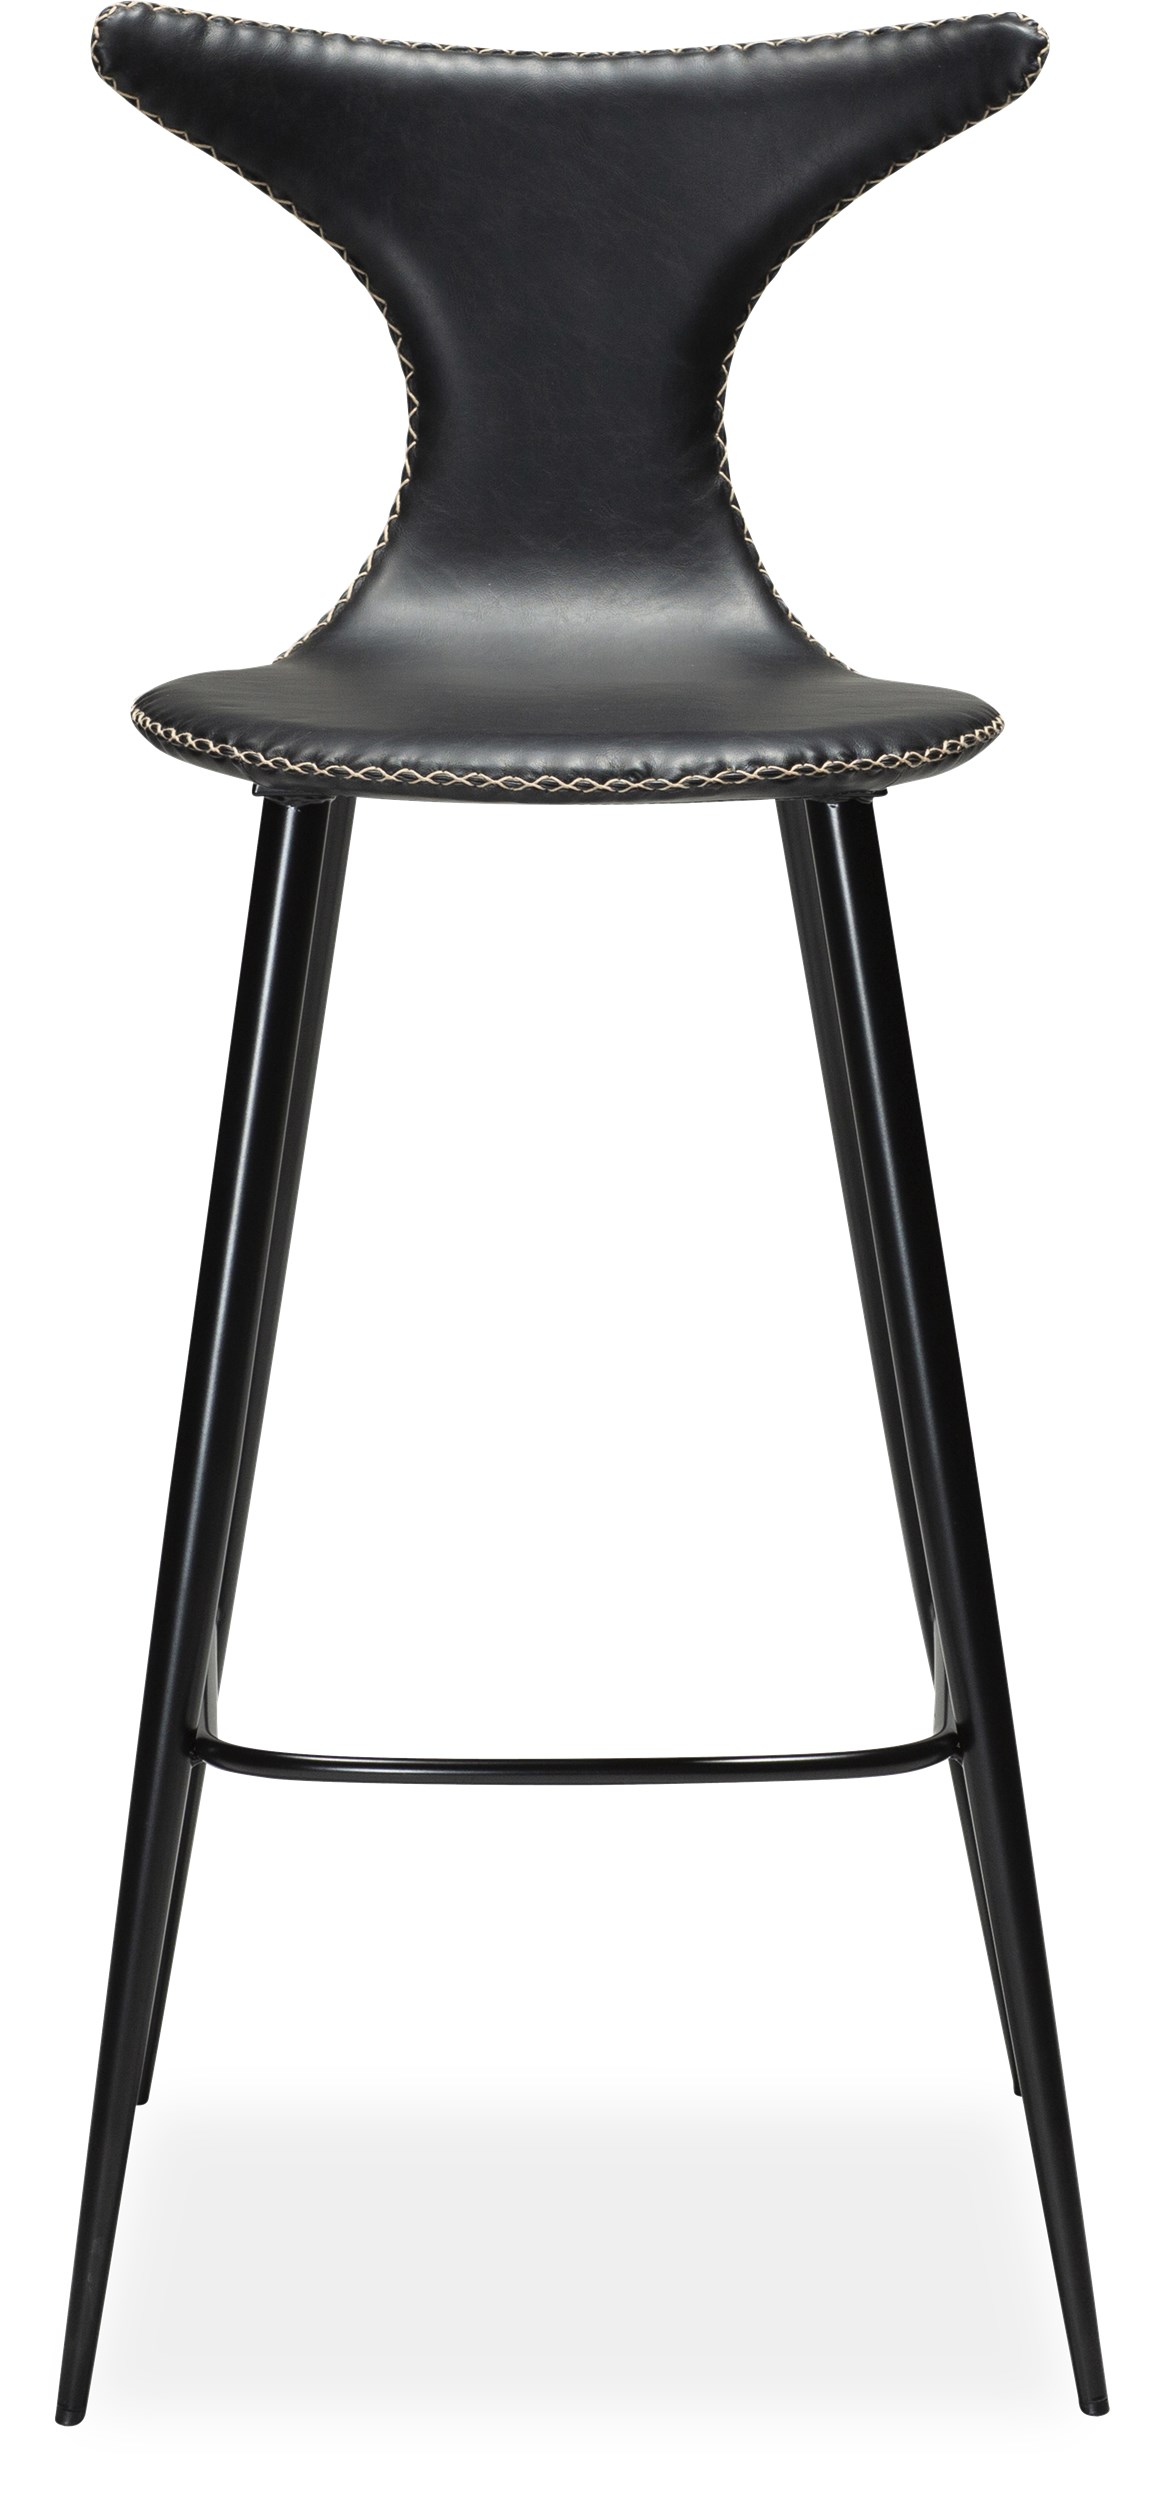 Dolphin Barstol - sæde i sort vintage kunstlæder, med kontrastsyninger og runde ben i sortlakeret metal